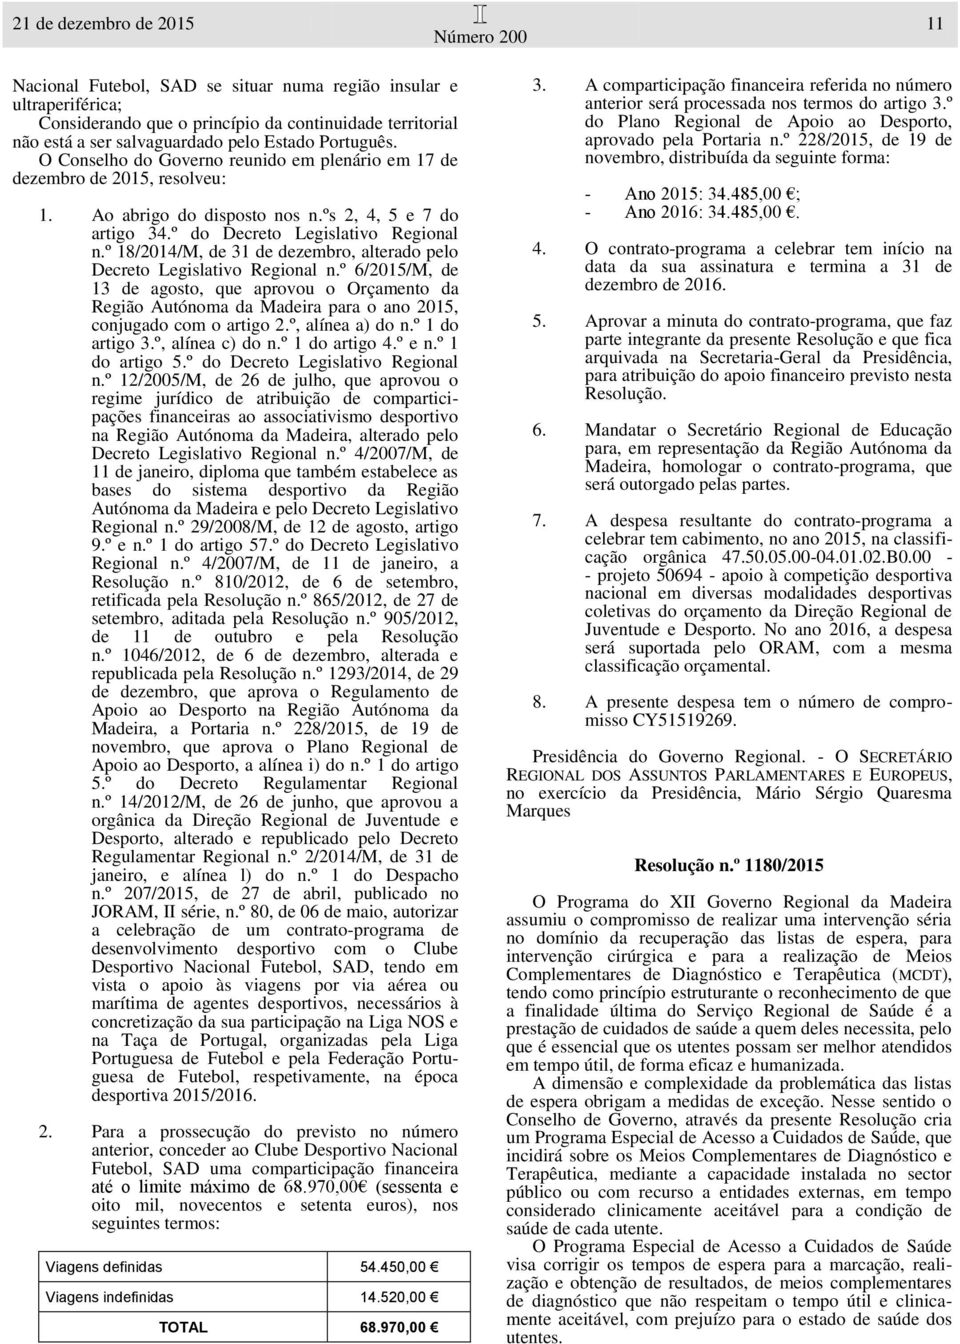 º 6/2015/M, de 13 de agosto, que aprovou o Orçamento da Região Autónoma da Madeira para o ano 2015, conjugado com o artigo 2.º, alínea a) do n.º 1 do artigo 3.º, alínea c) do n.º 1 do artigo 4.º e n.